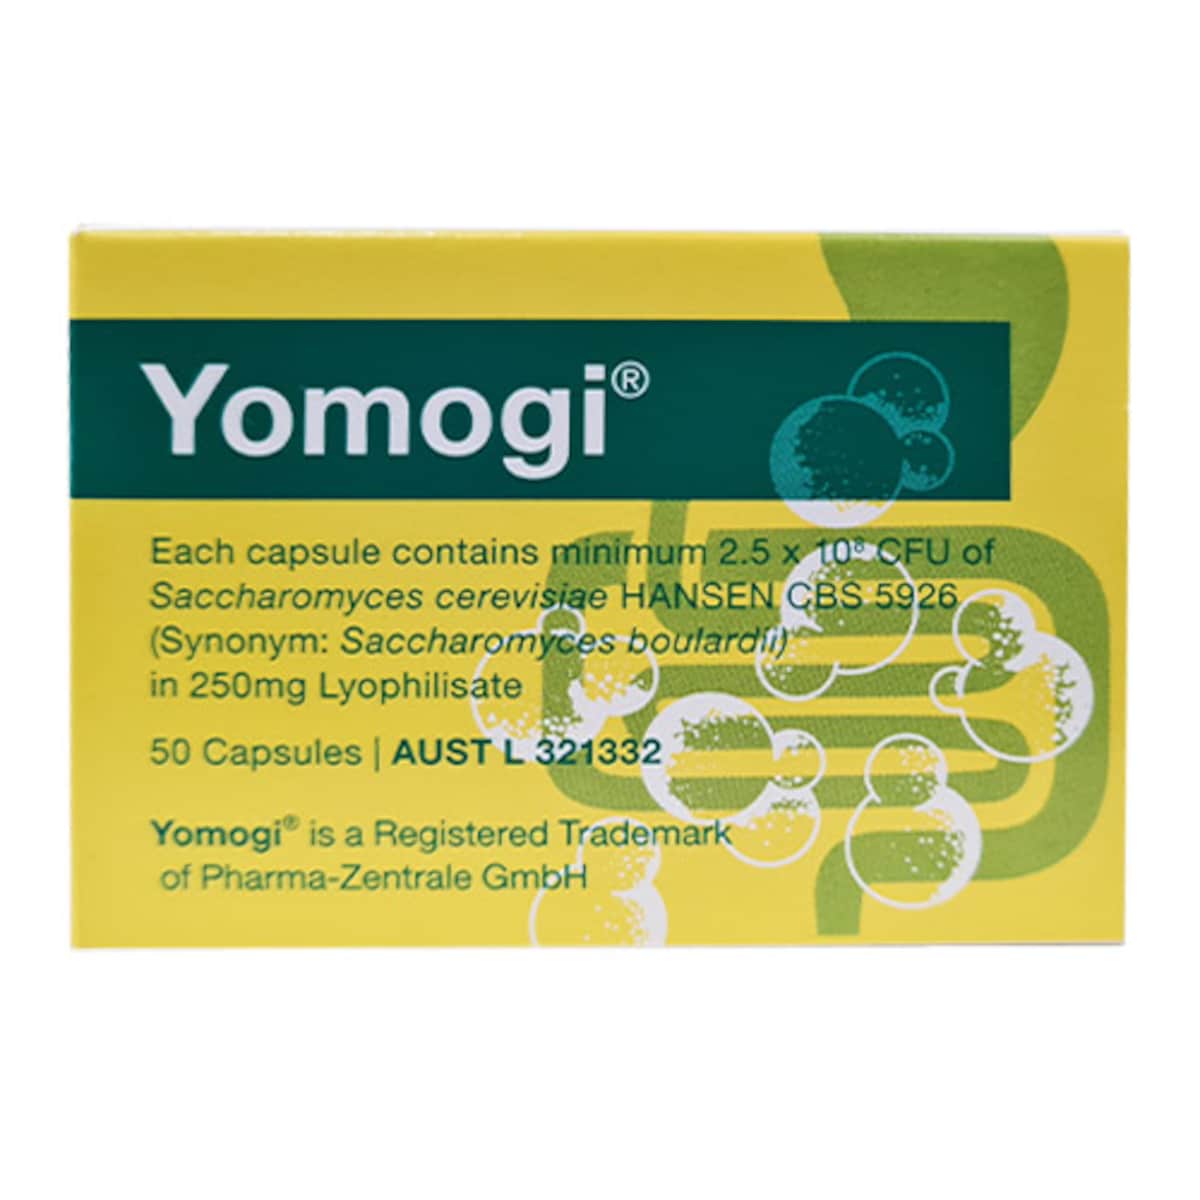 Yomogi Saccharomyces Boulardii 50 Capsules